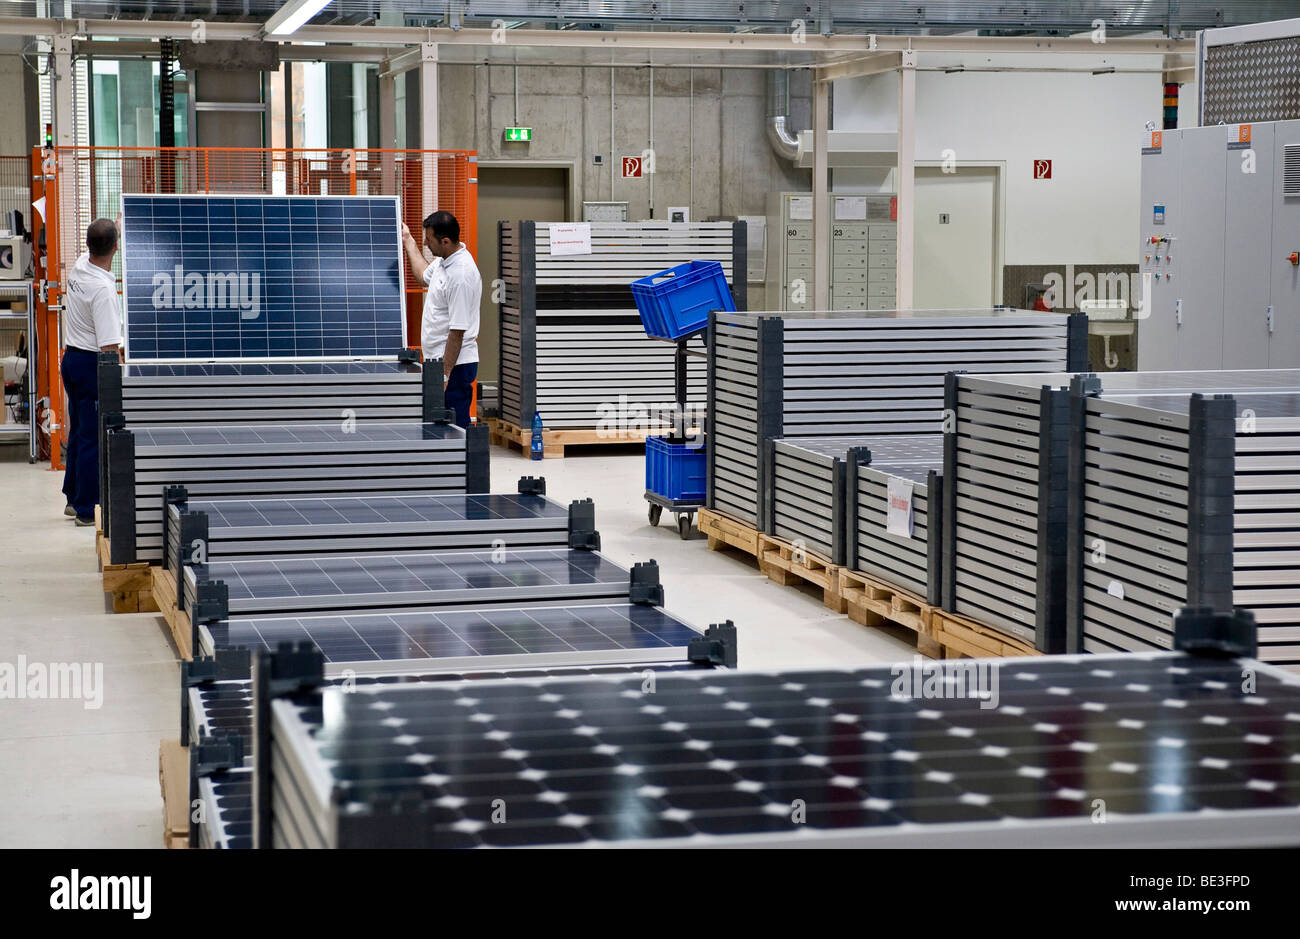 Le stockage, la production de modules solaires à SOLON SE, Berlin-Adlershof, Germany, Europe Banque D'Images